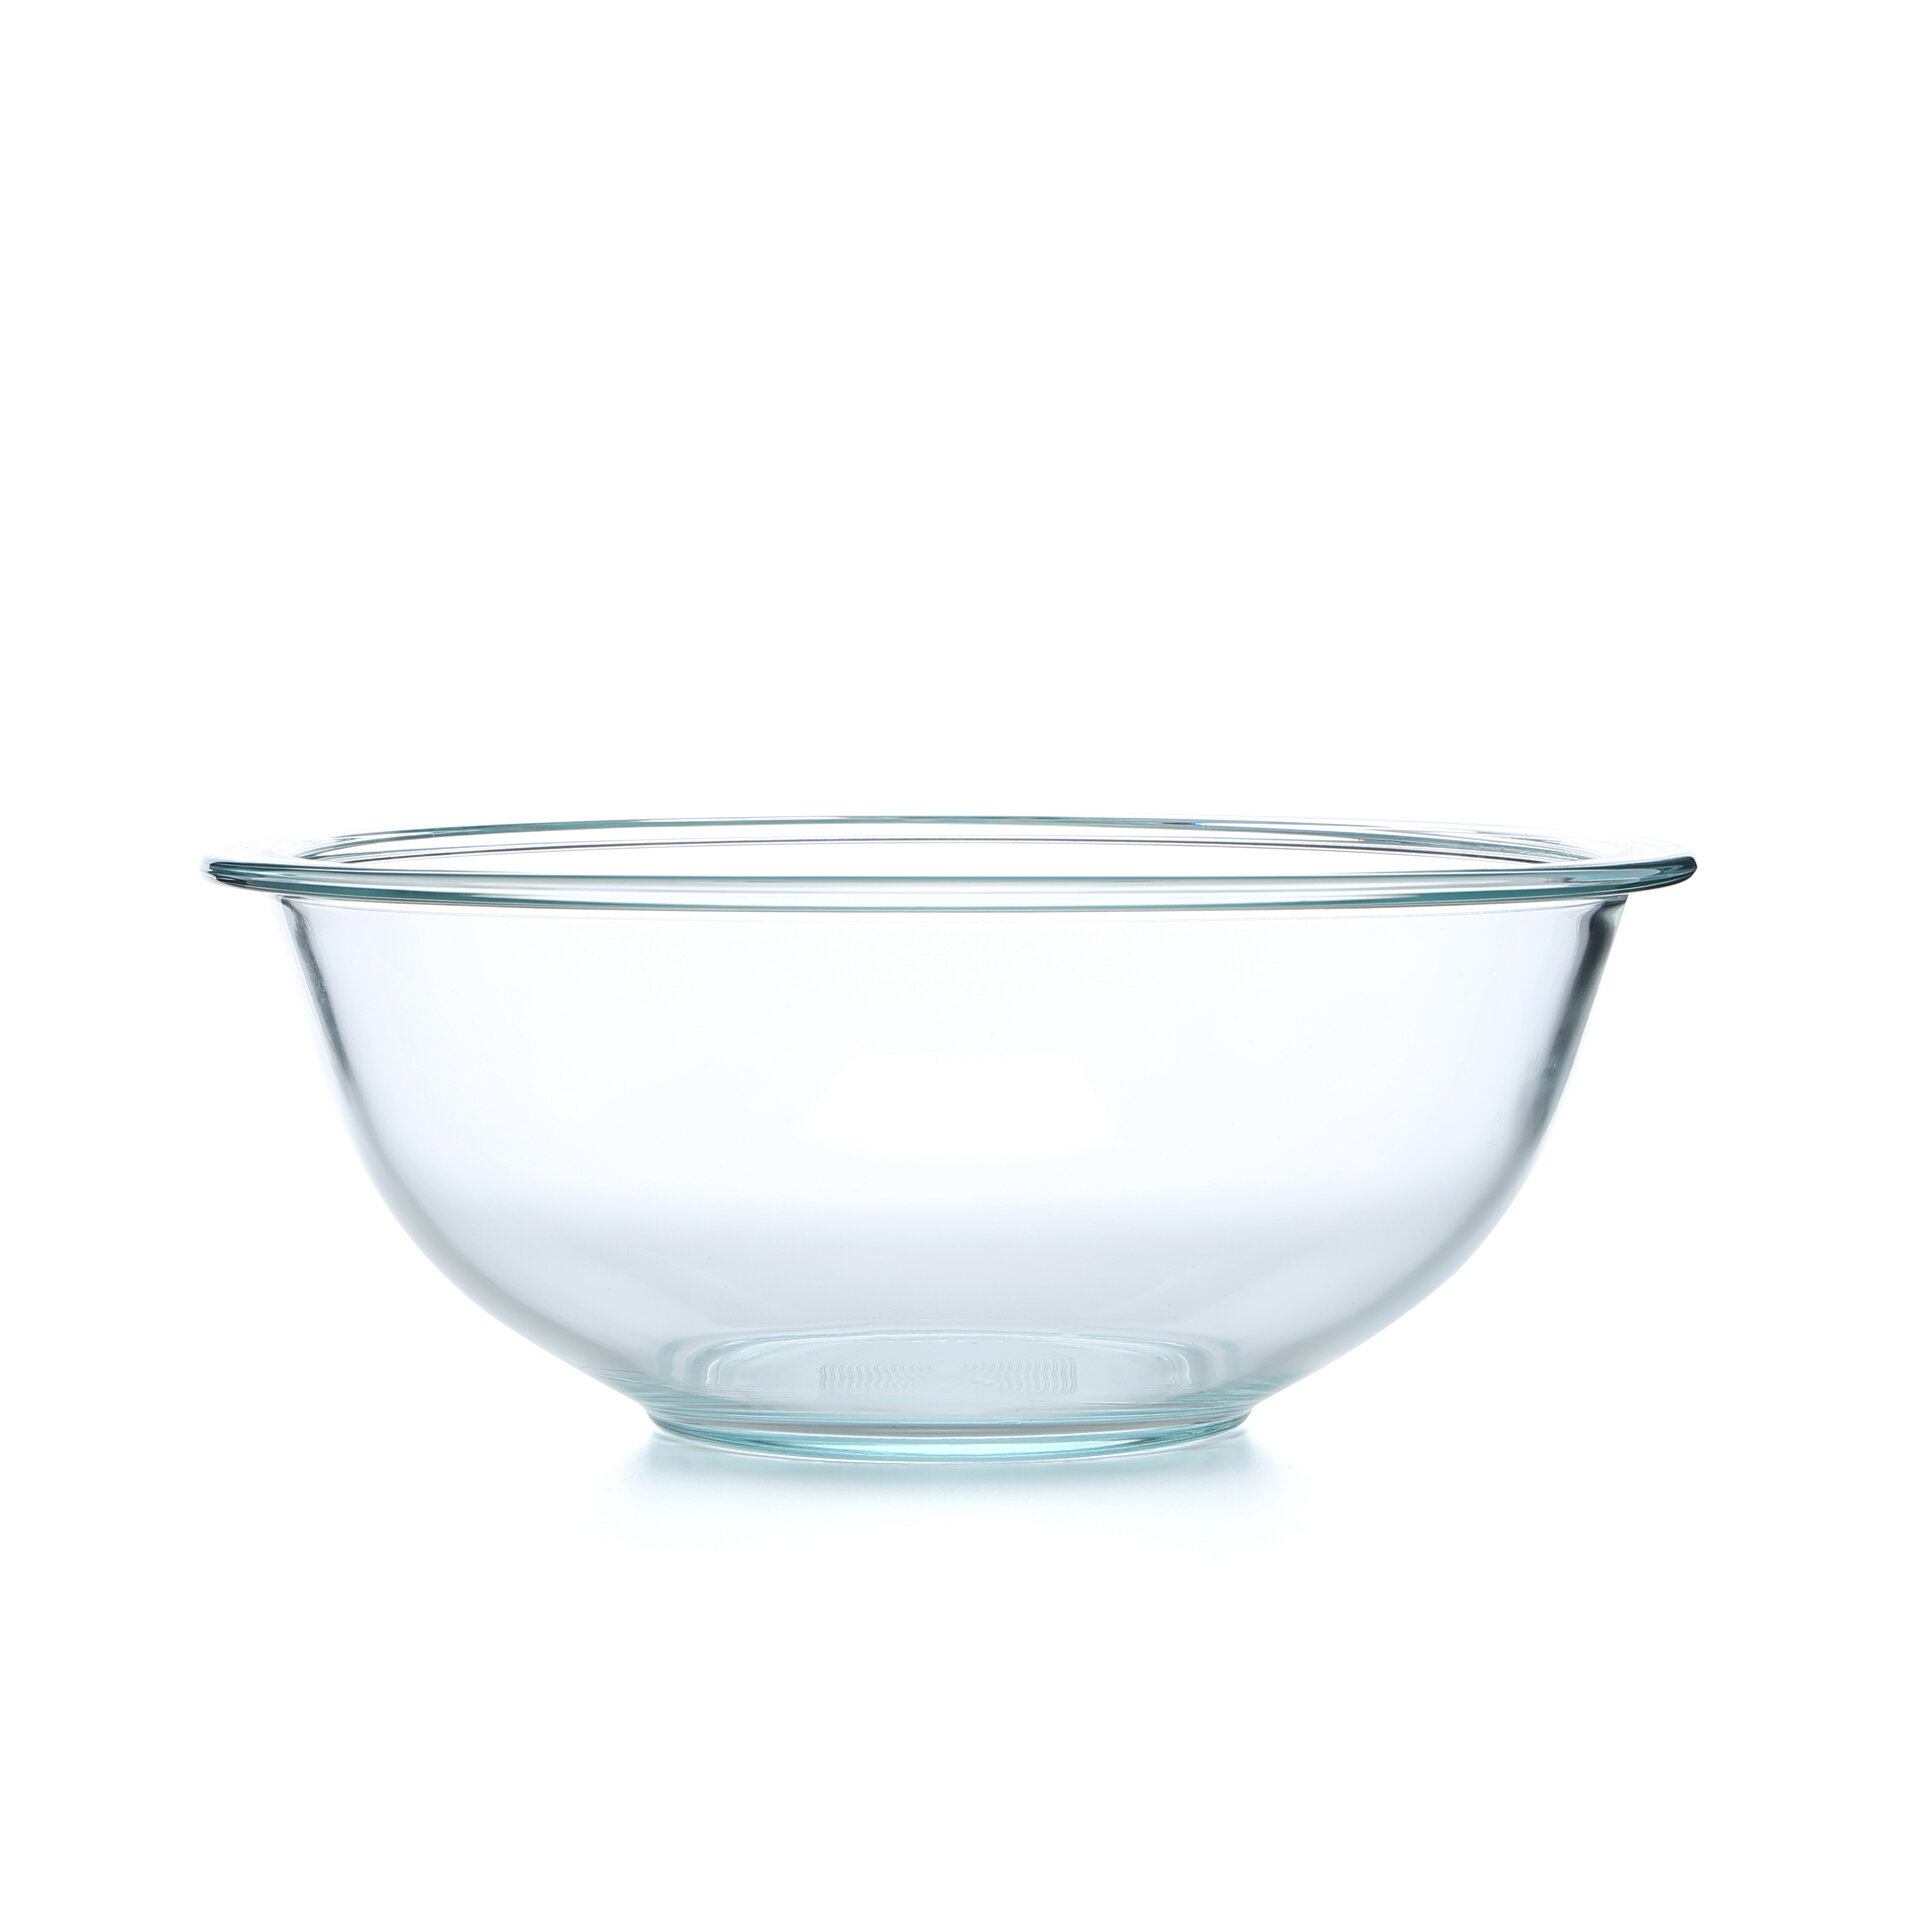 https://assets.wfcdn.com/im/78490934/compr-r85/9018/9018752/pyrex-prepware-glass-mixing-bowl.jpg